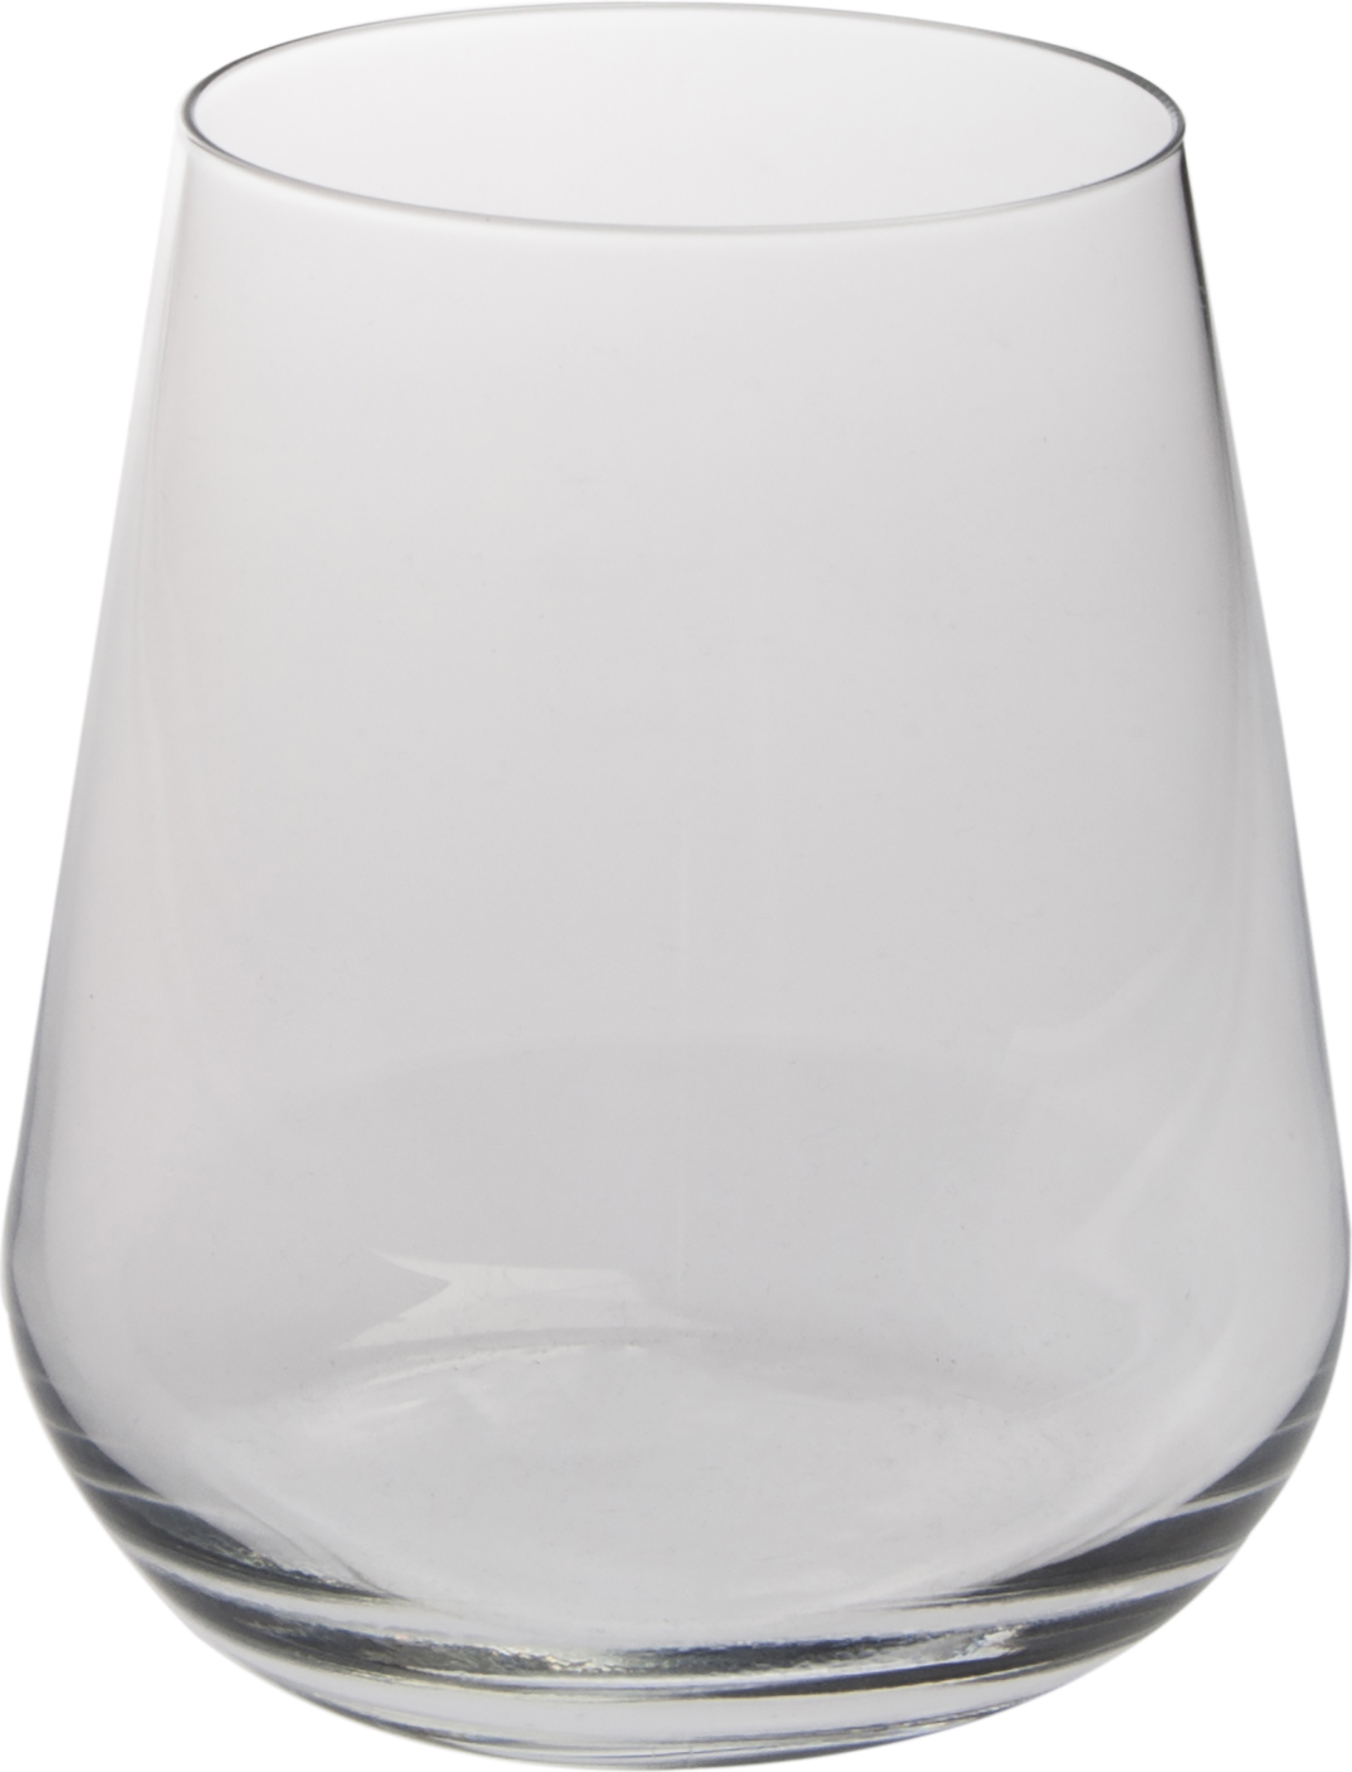 [8557186] Vattenglas 35 cl InAlto Uno